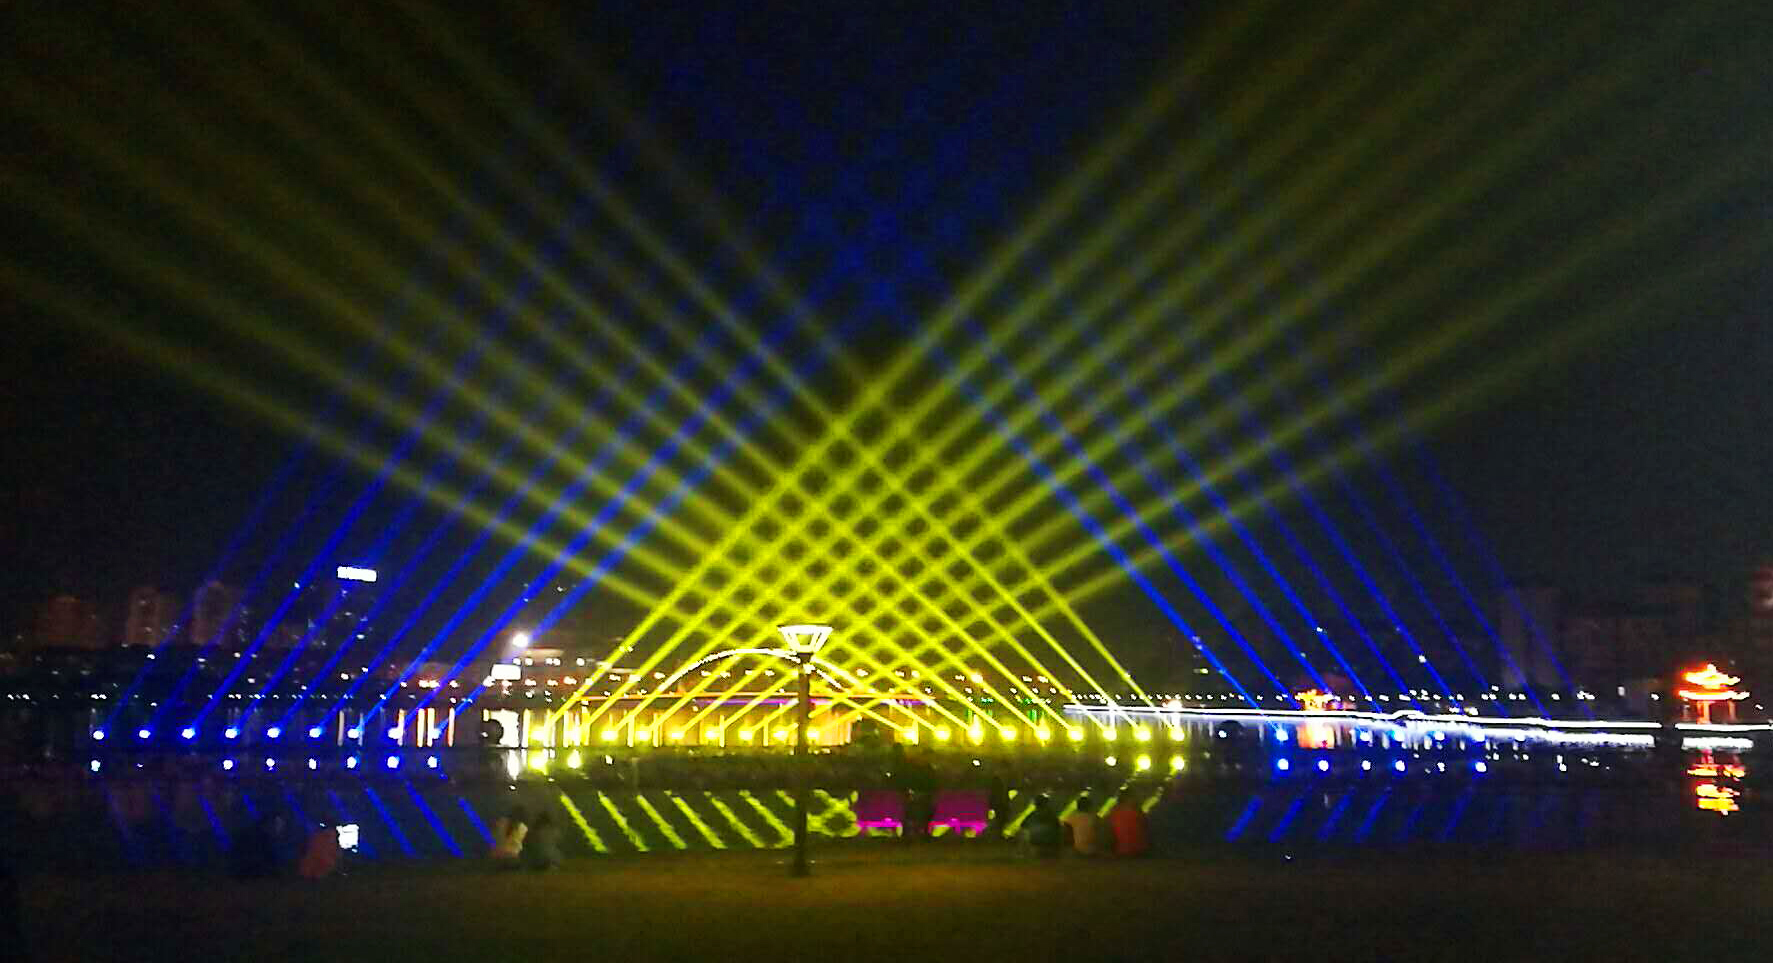 户外防水LED网灯3x2米渔网灯彩灯庭院草坪装饰LED星星灯婚庆创意-阿里巴巴